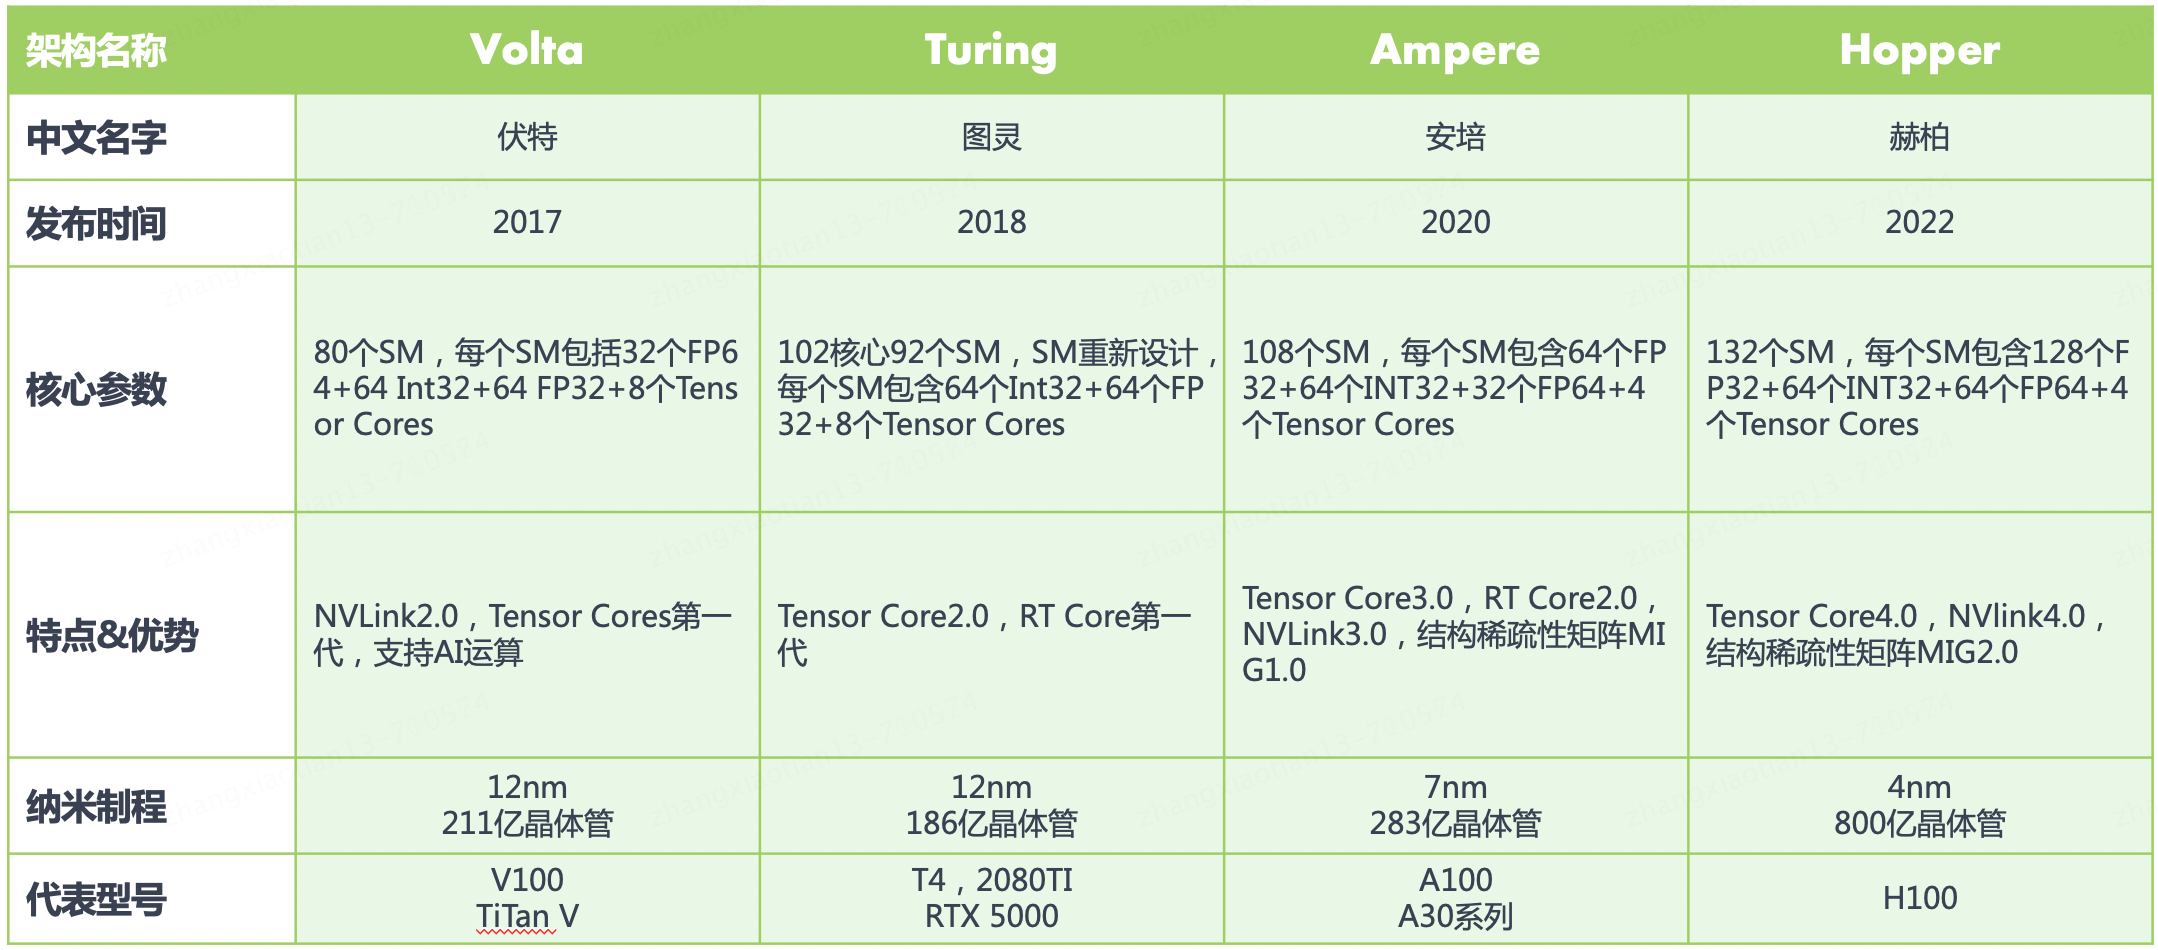 英伟达 GPU Tensor Core 发展